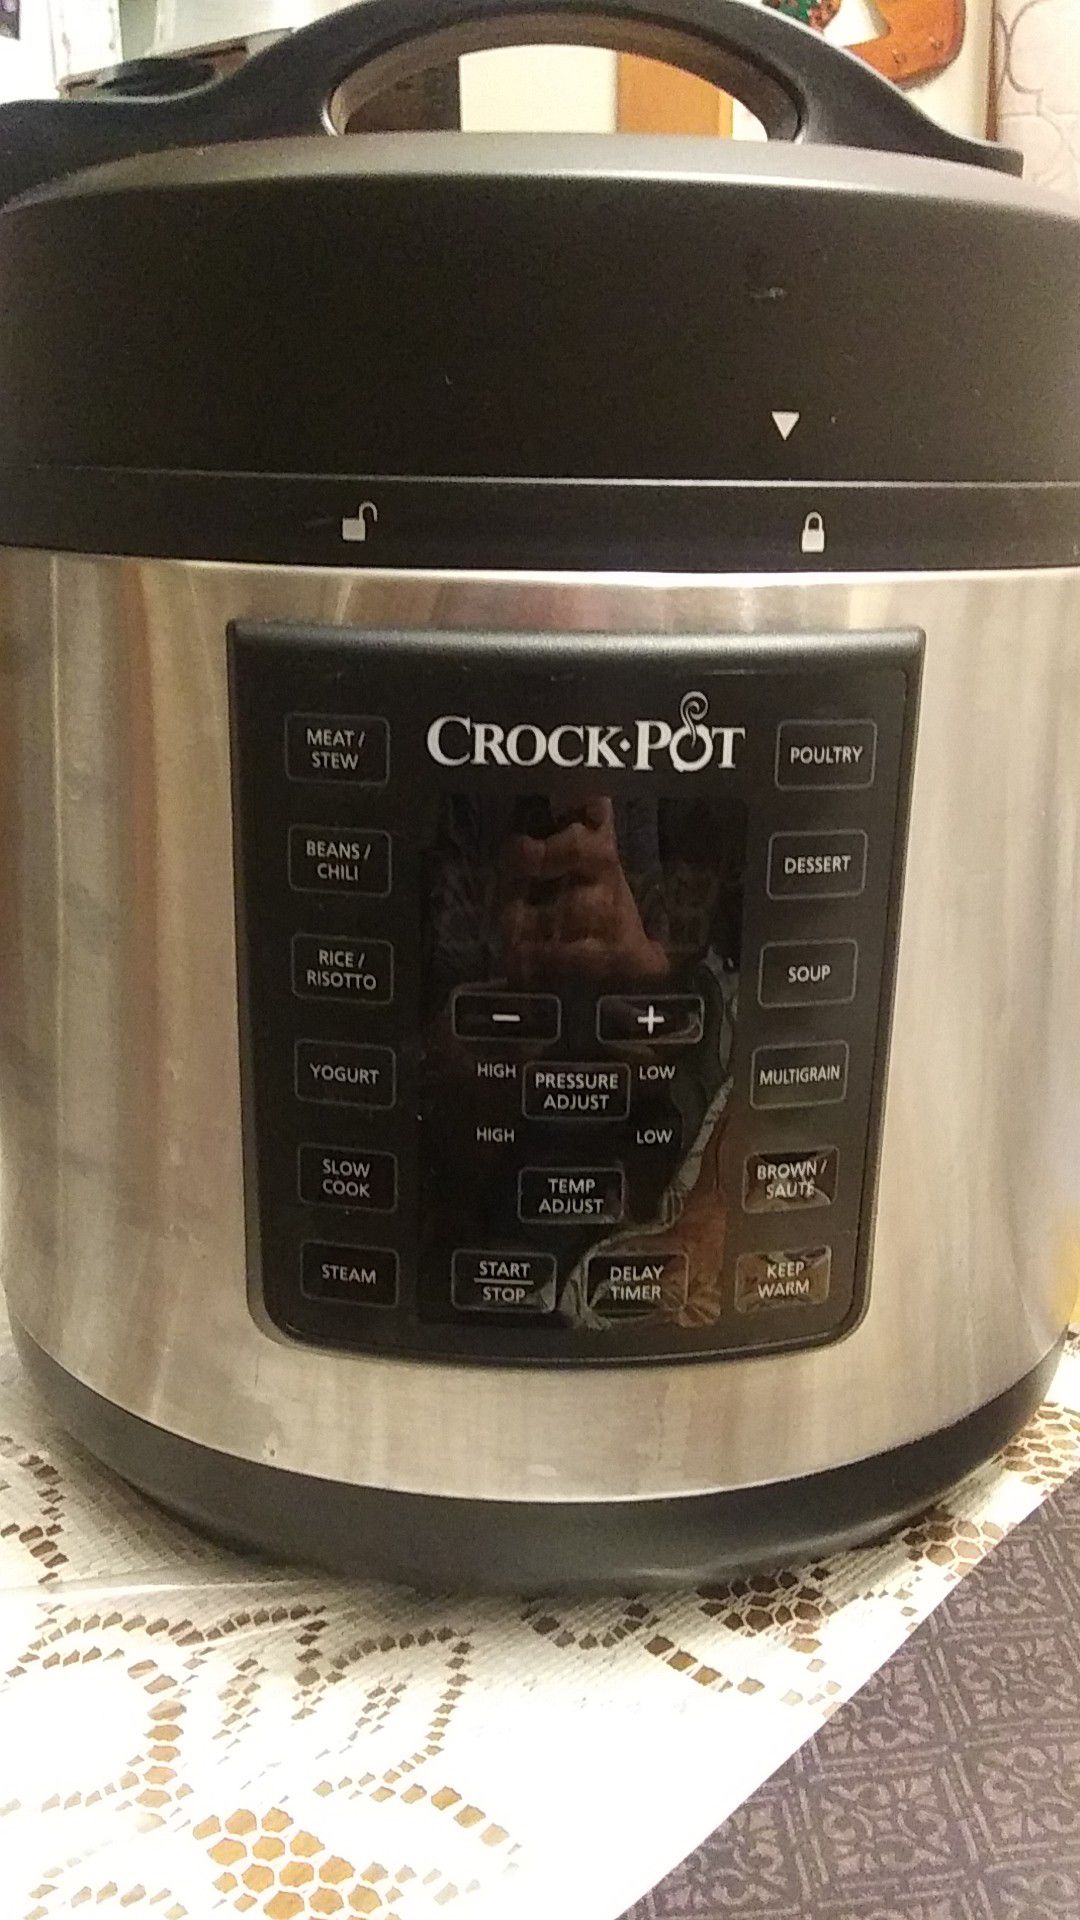 Crock pot multi cooker